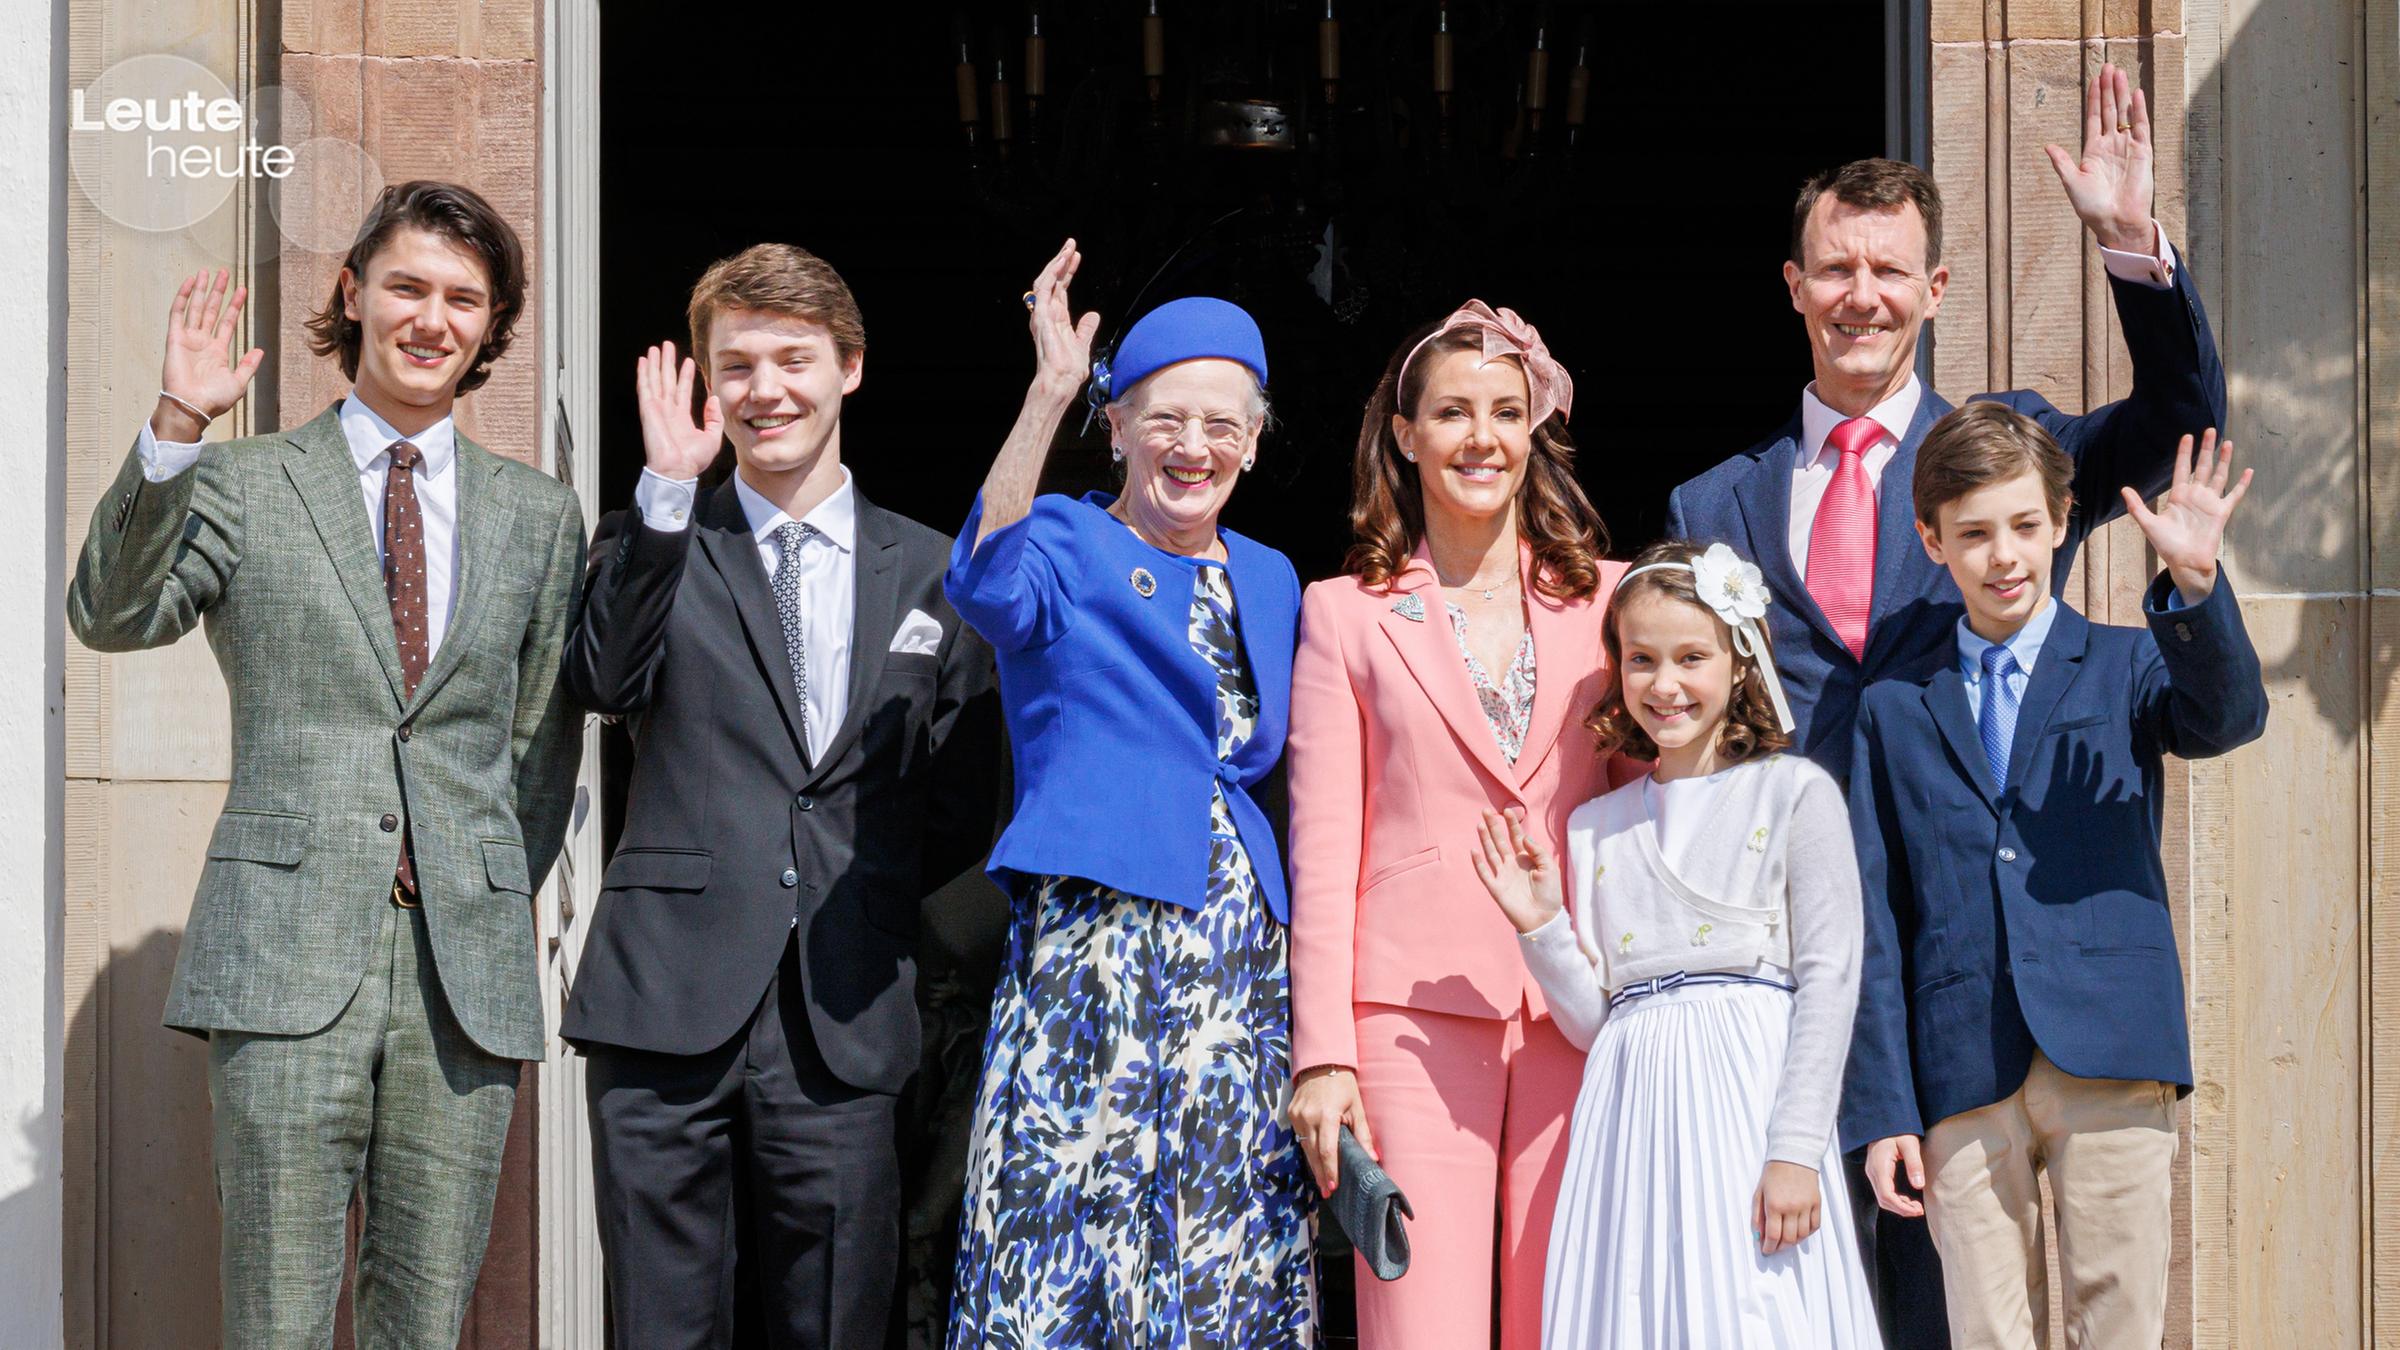 Dänische Königsfamilie